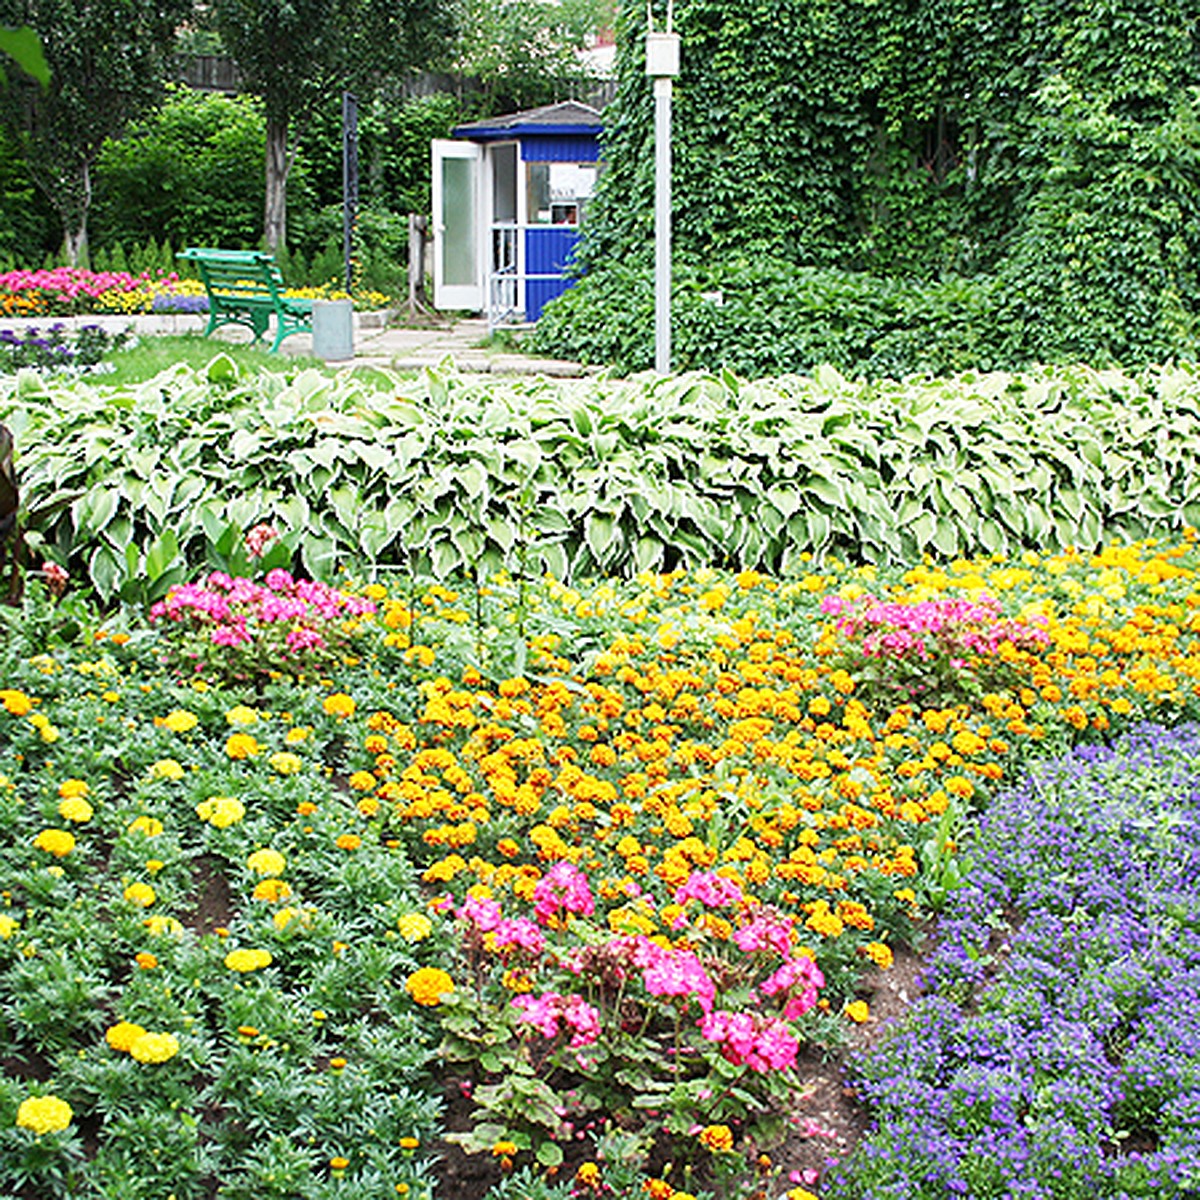 Ботанический сад Минск (32 фото)